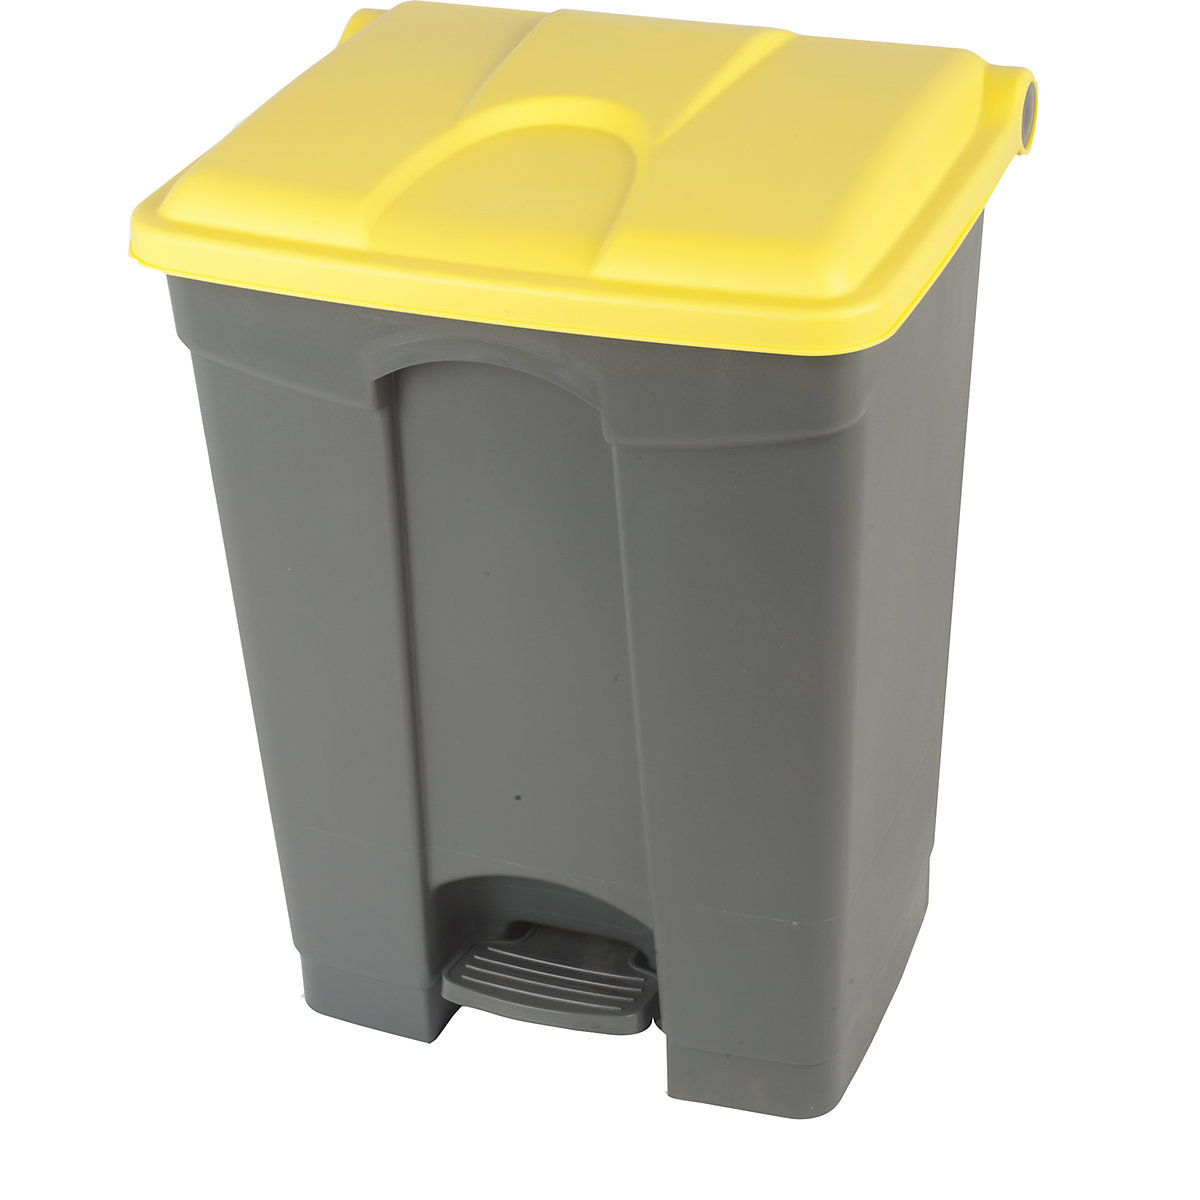 Spremnik za otpad s papučicom, volumen 70 l, ŠxVxD 505 x 675 x 415 mm, u sivoj boji, poklopac u žutoj boji-14